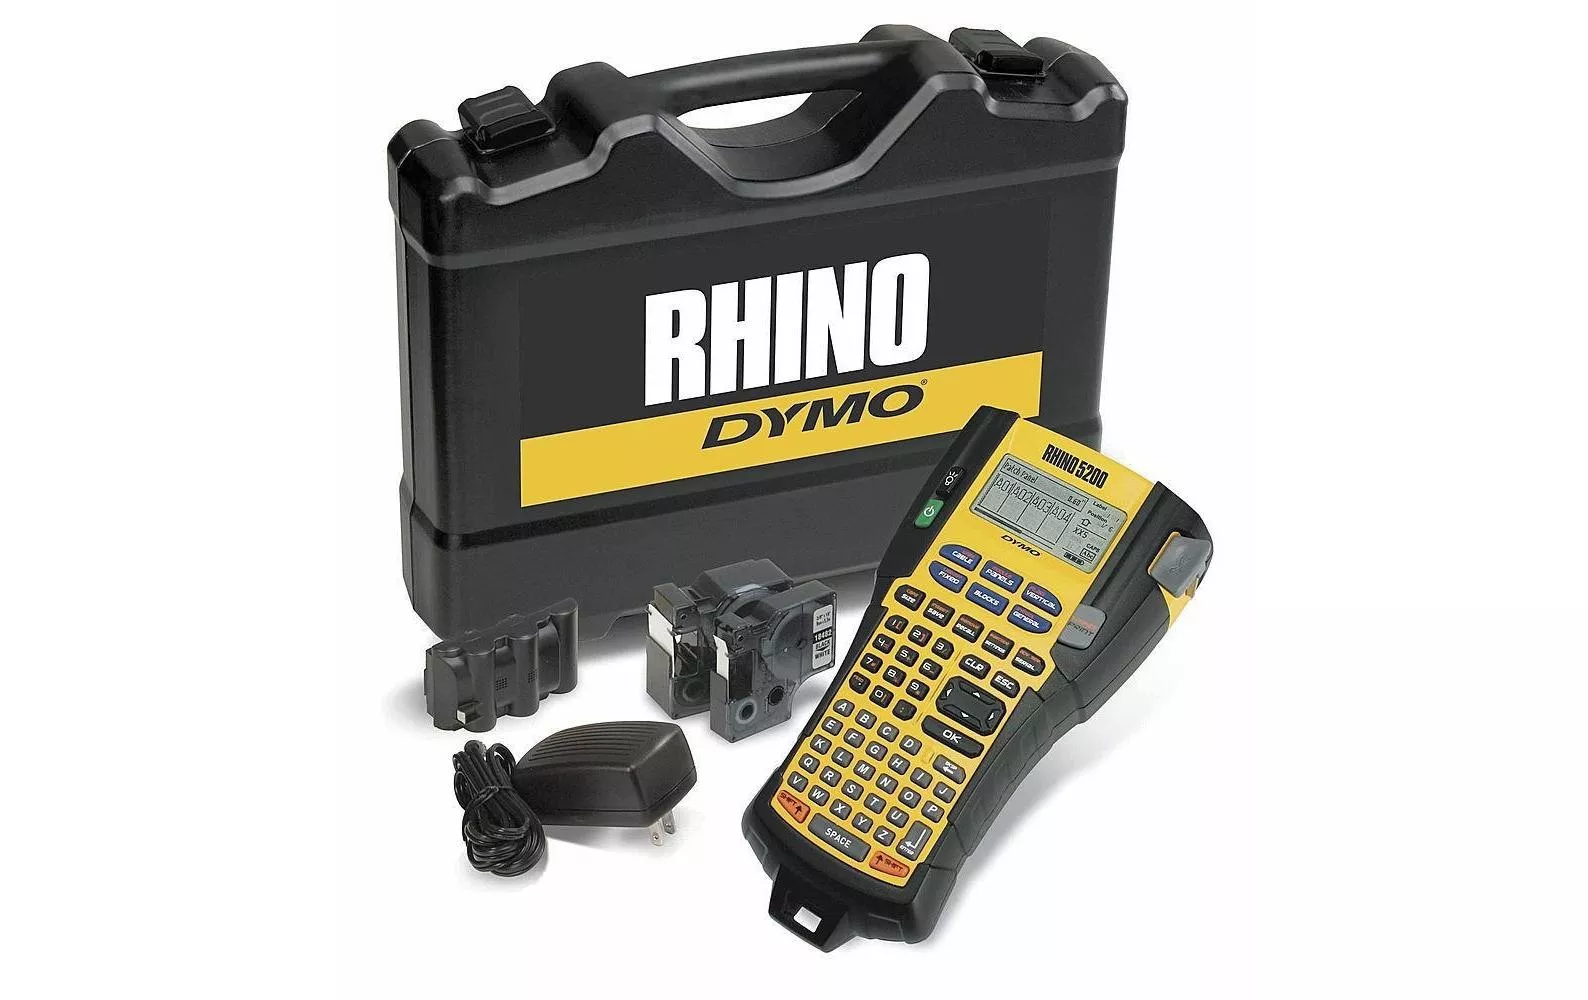 Kit per la stampante di etichette DYMO Rhino 5200